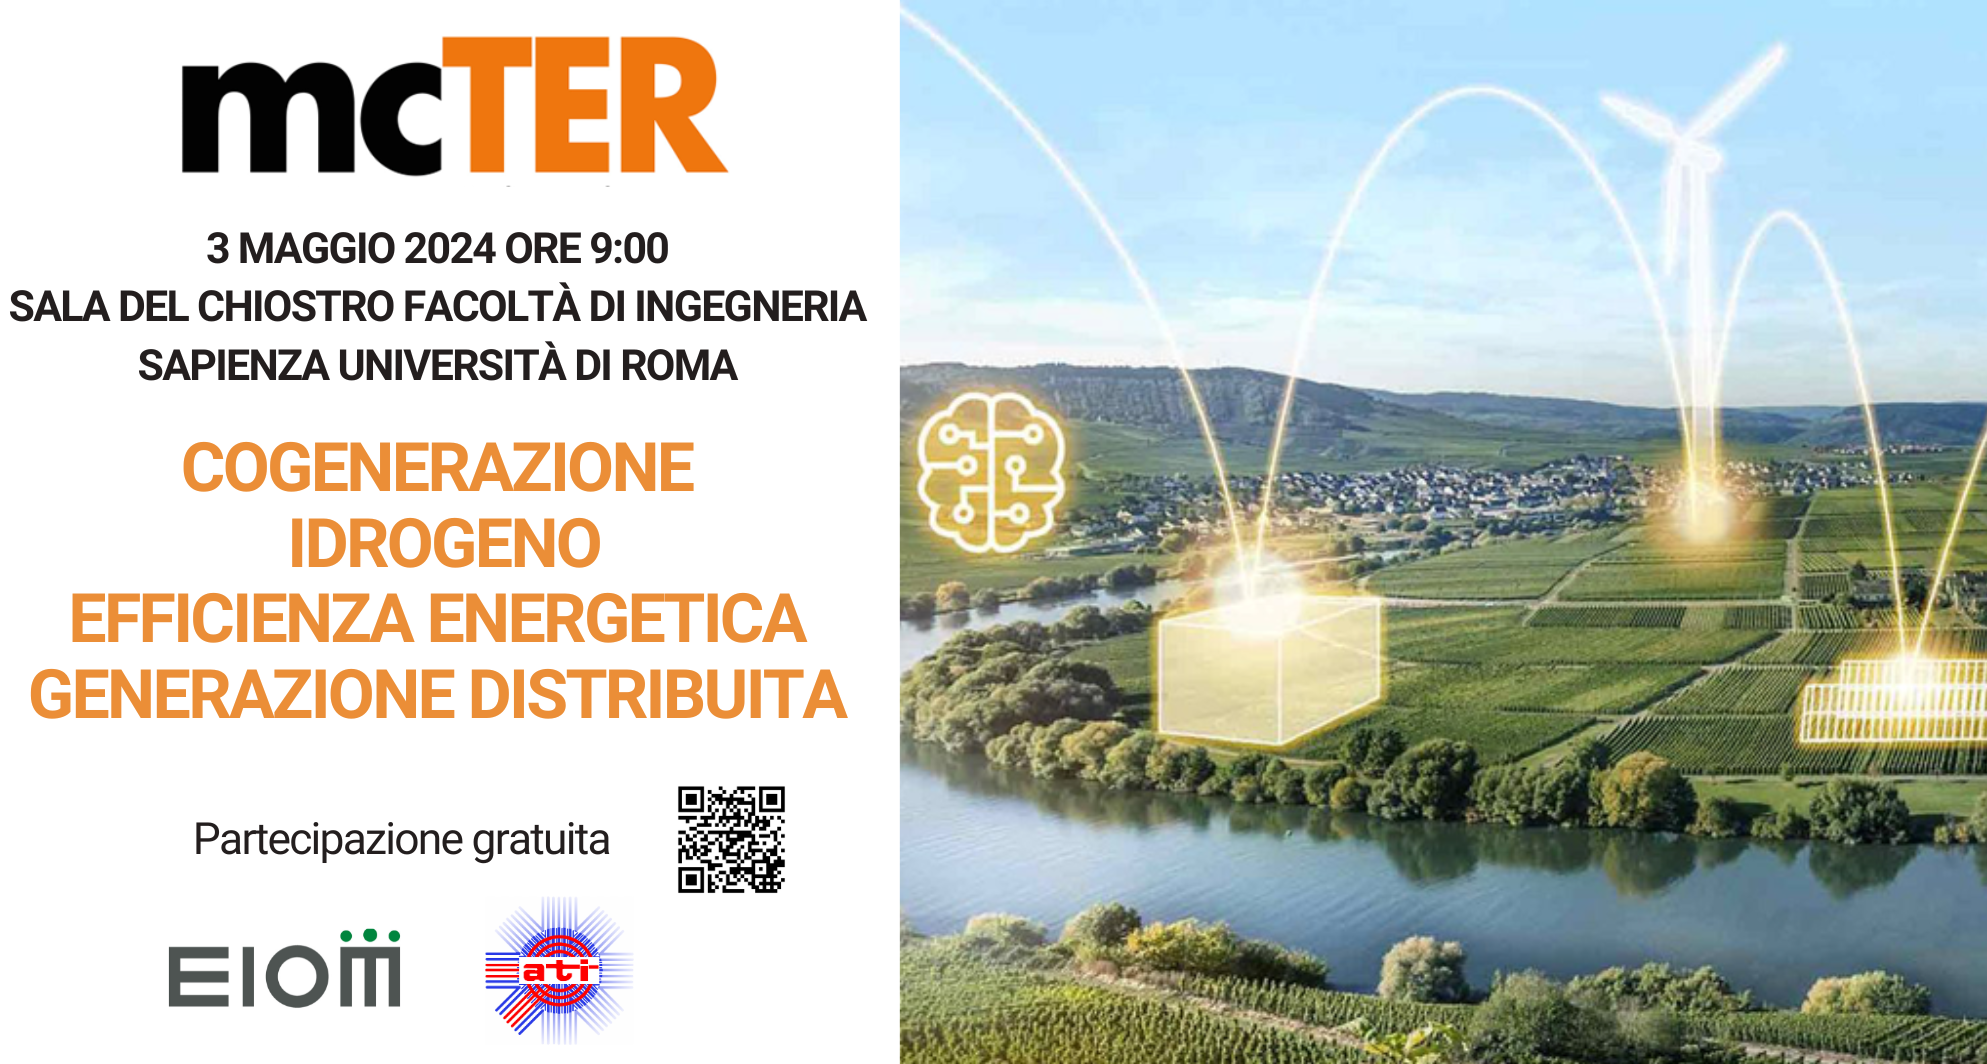 Appuntamento a mcTER Roma il 3 maggio con Efficienza Energetica, Cogenerazione e Idrogeno